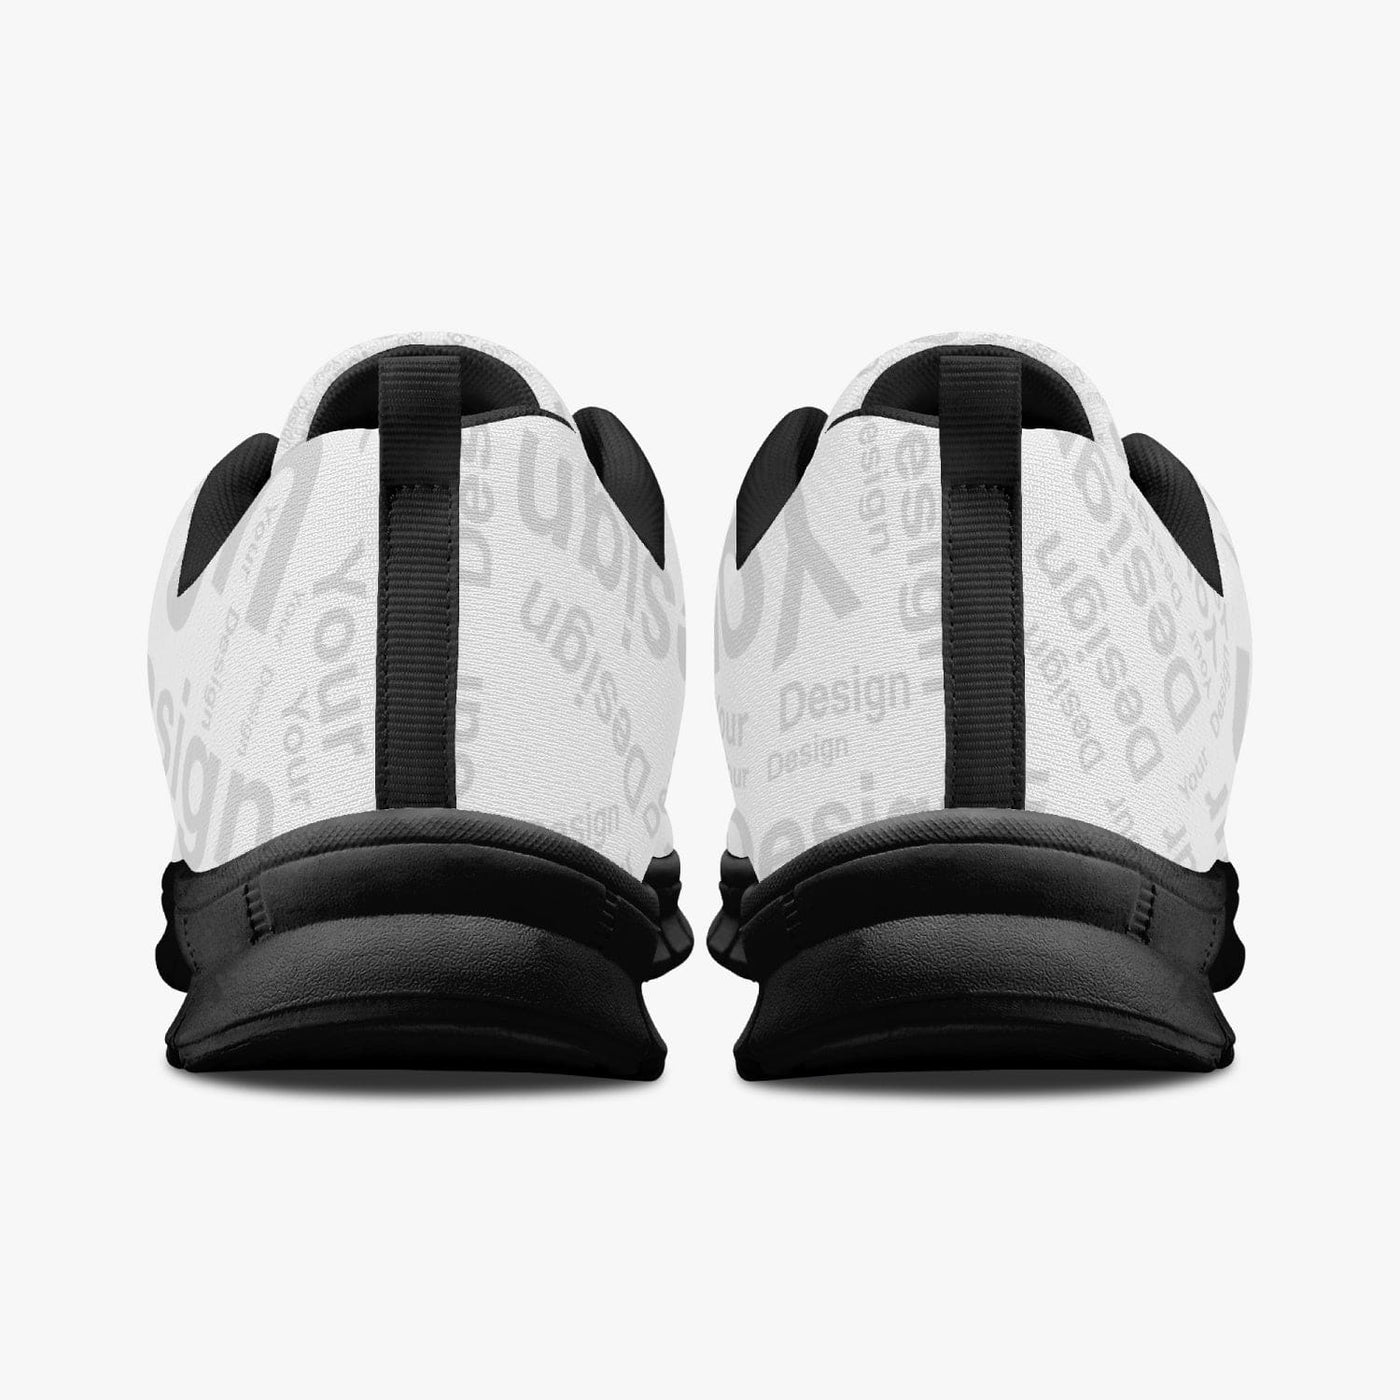 Your Design - Custom Sports Shoes For Men/women White/black